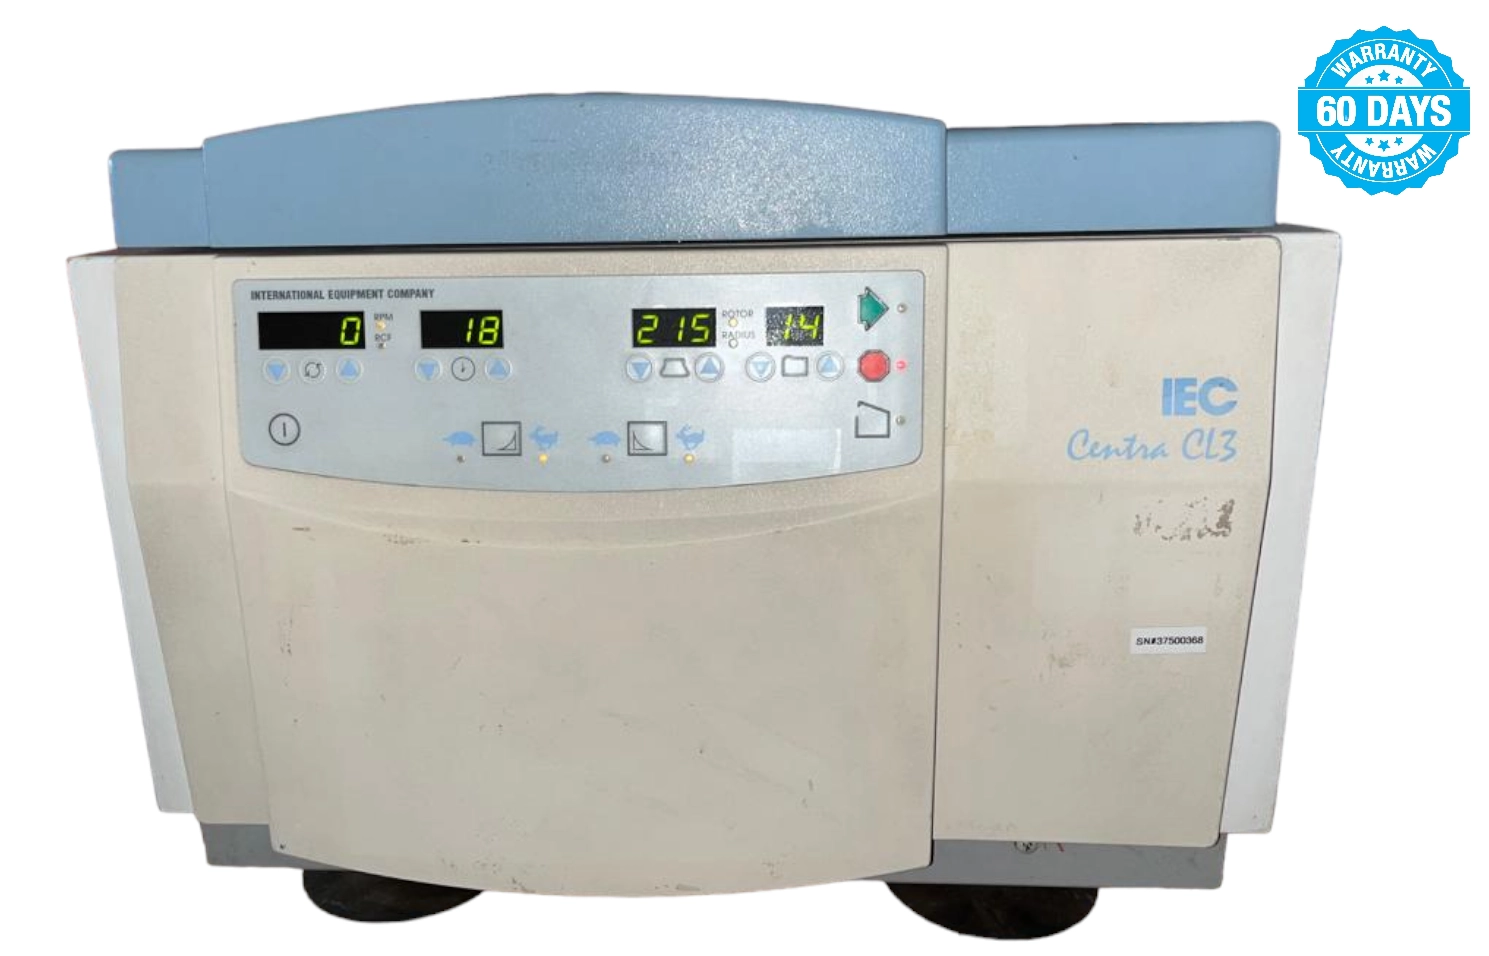 Thermo IEC Centra CL3 Centrifuge